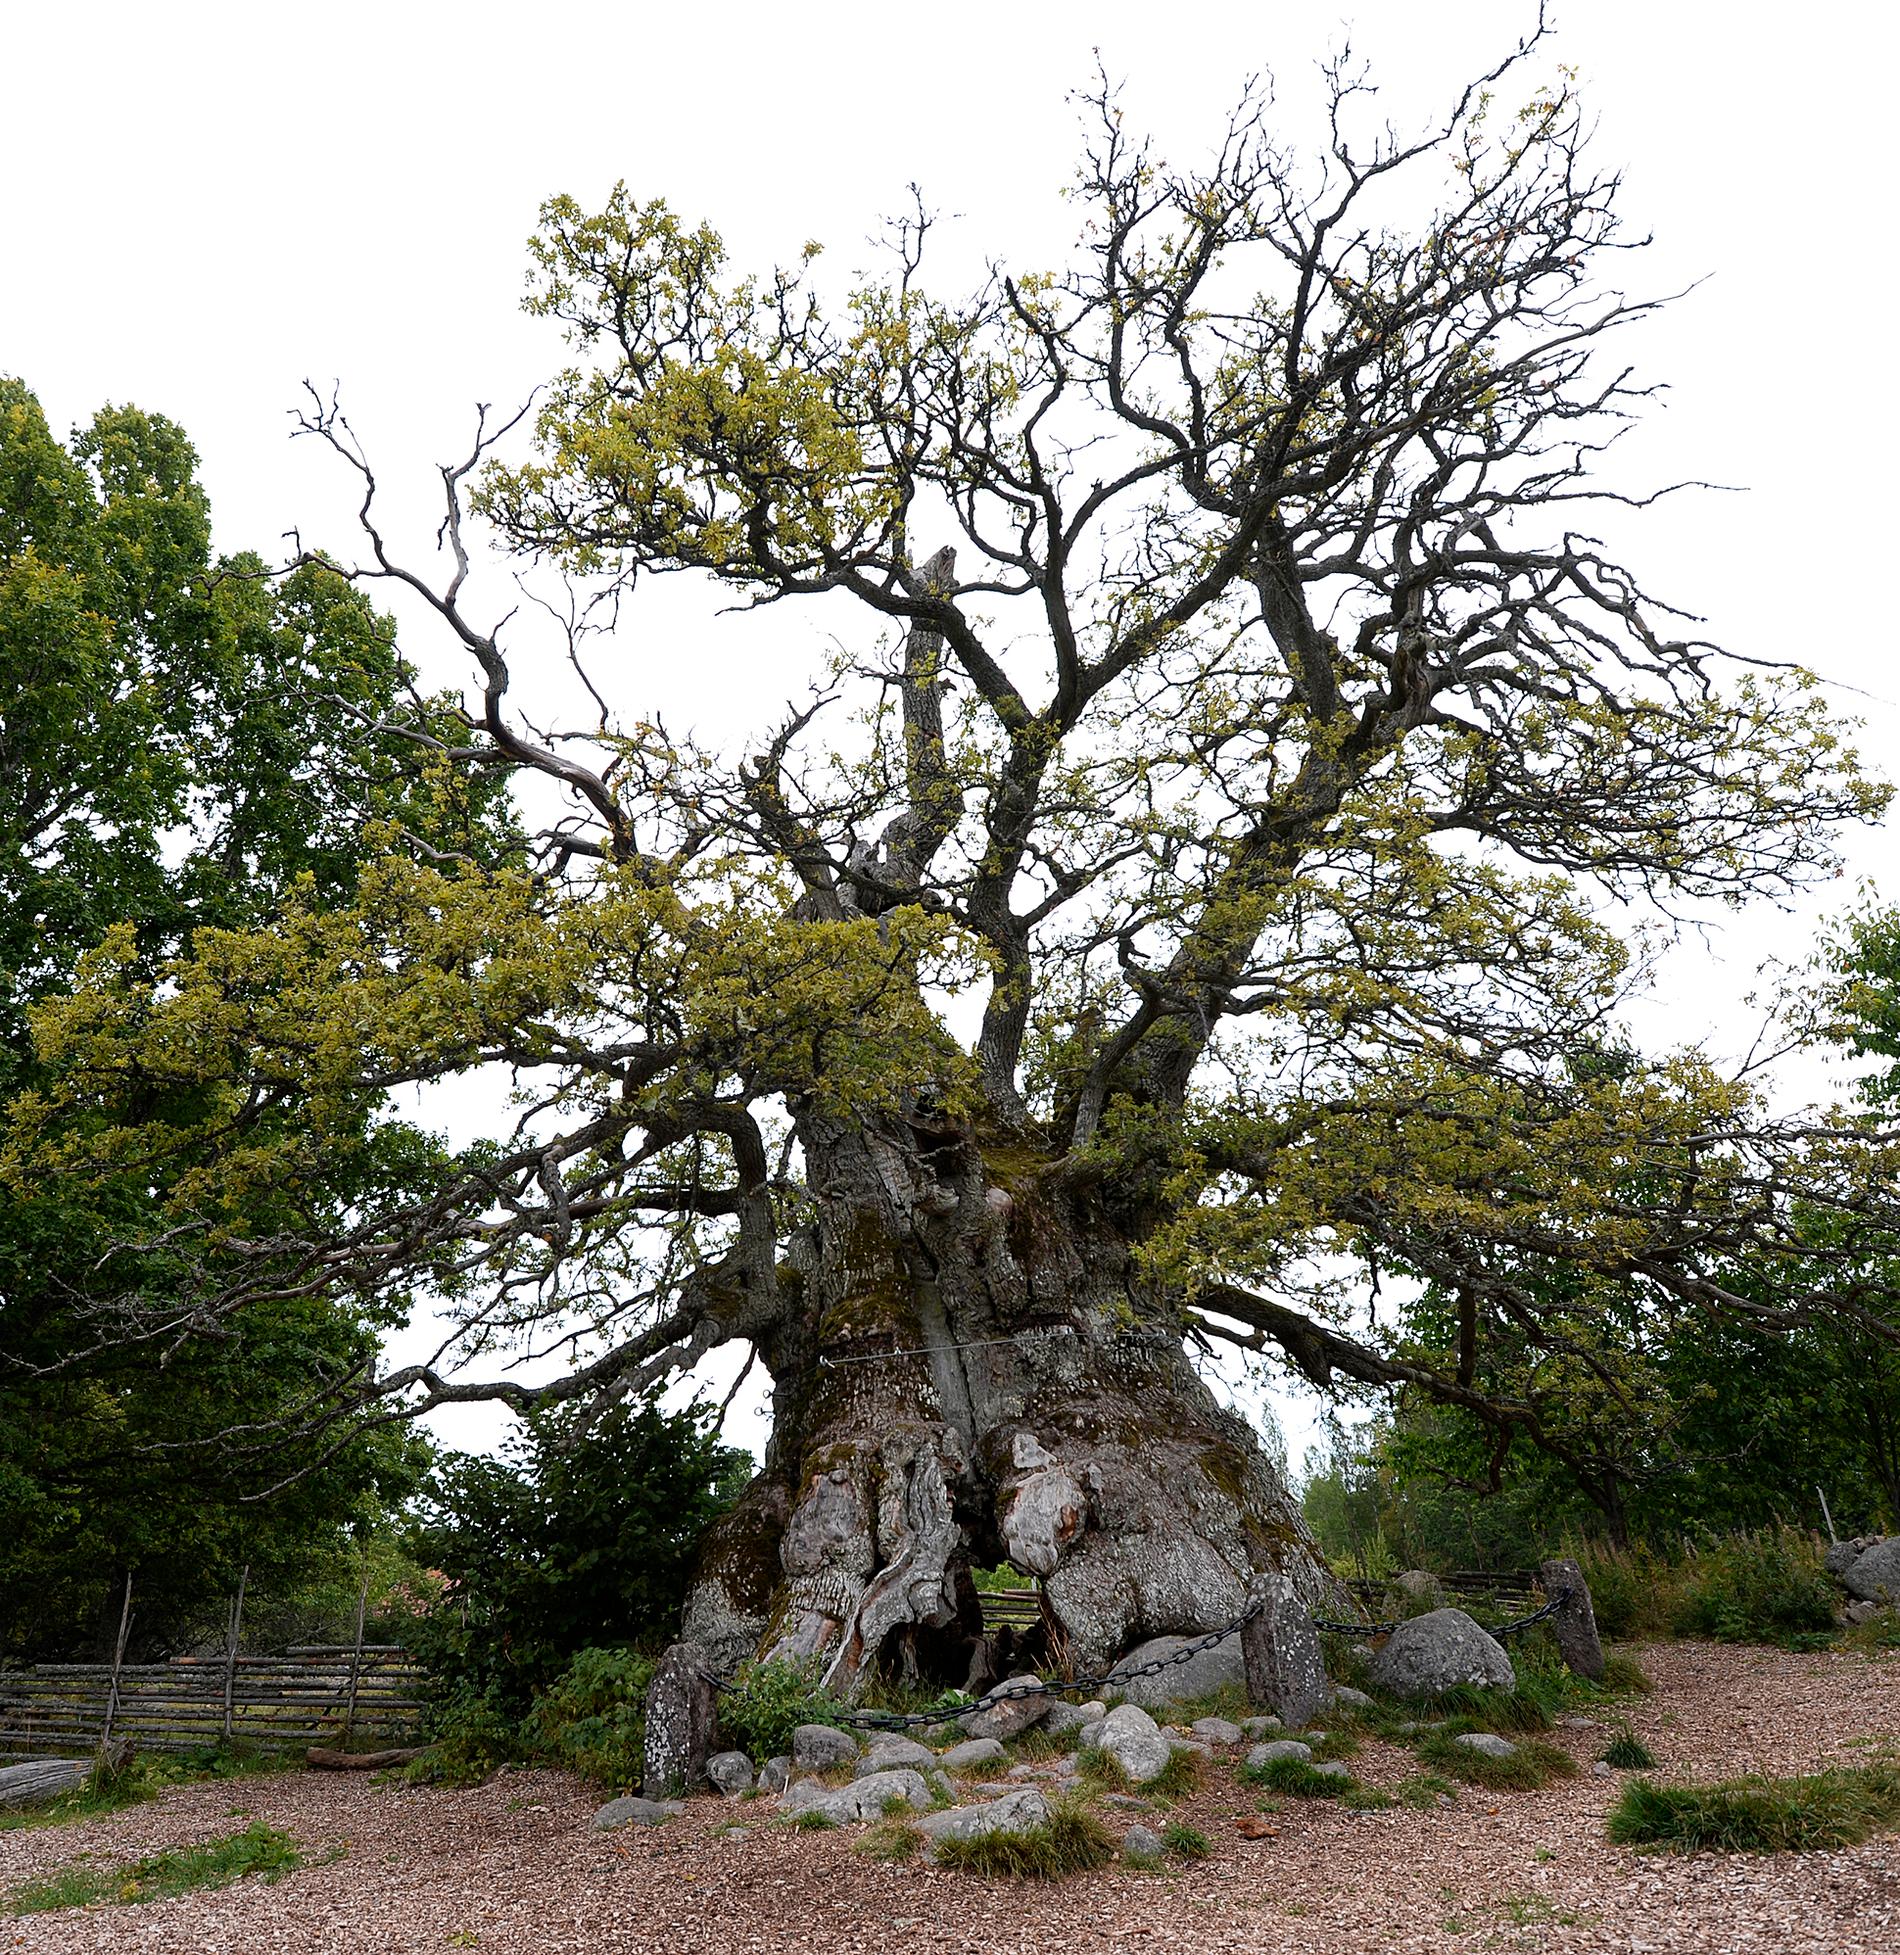 Kvilleken i Kvillreservatet utanför Vimmerby sägs vara nära tusen år gammal och mäter 14 meter i omkrets. Nu har 